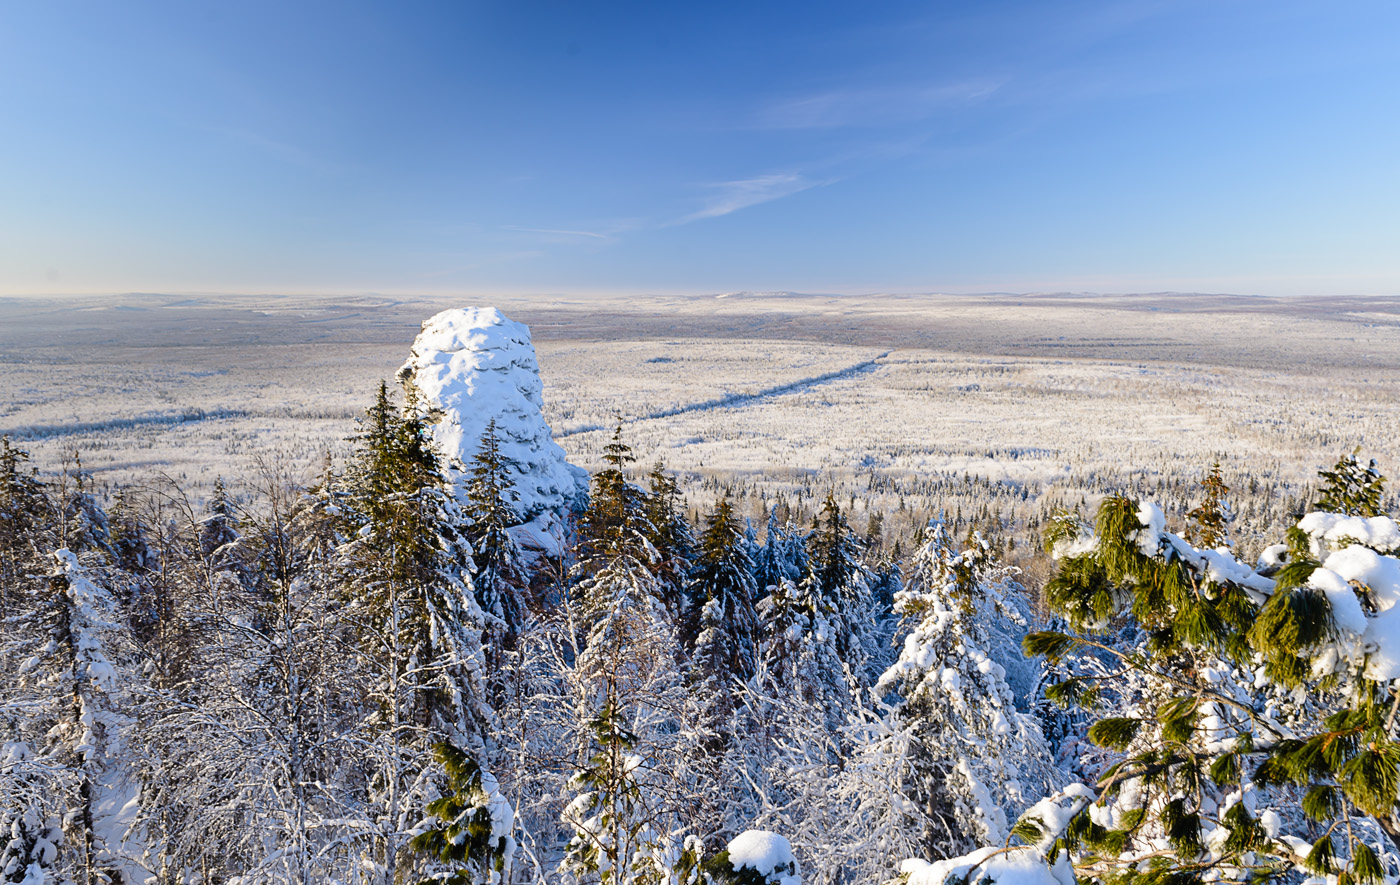 Фото 13. Скальный останец Чертов палец на вершине горы Колпаки. Уральские пейзажи зимой. 1/50, +0.33, 8.0, 110, 24.